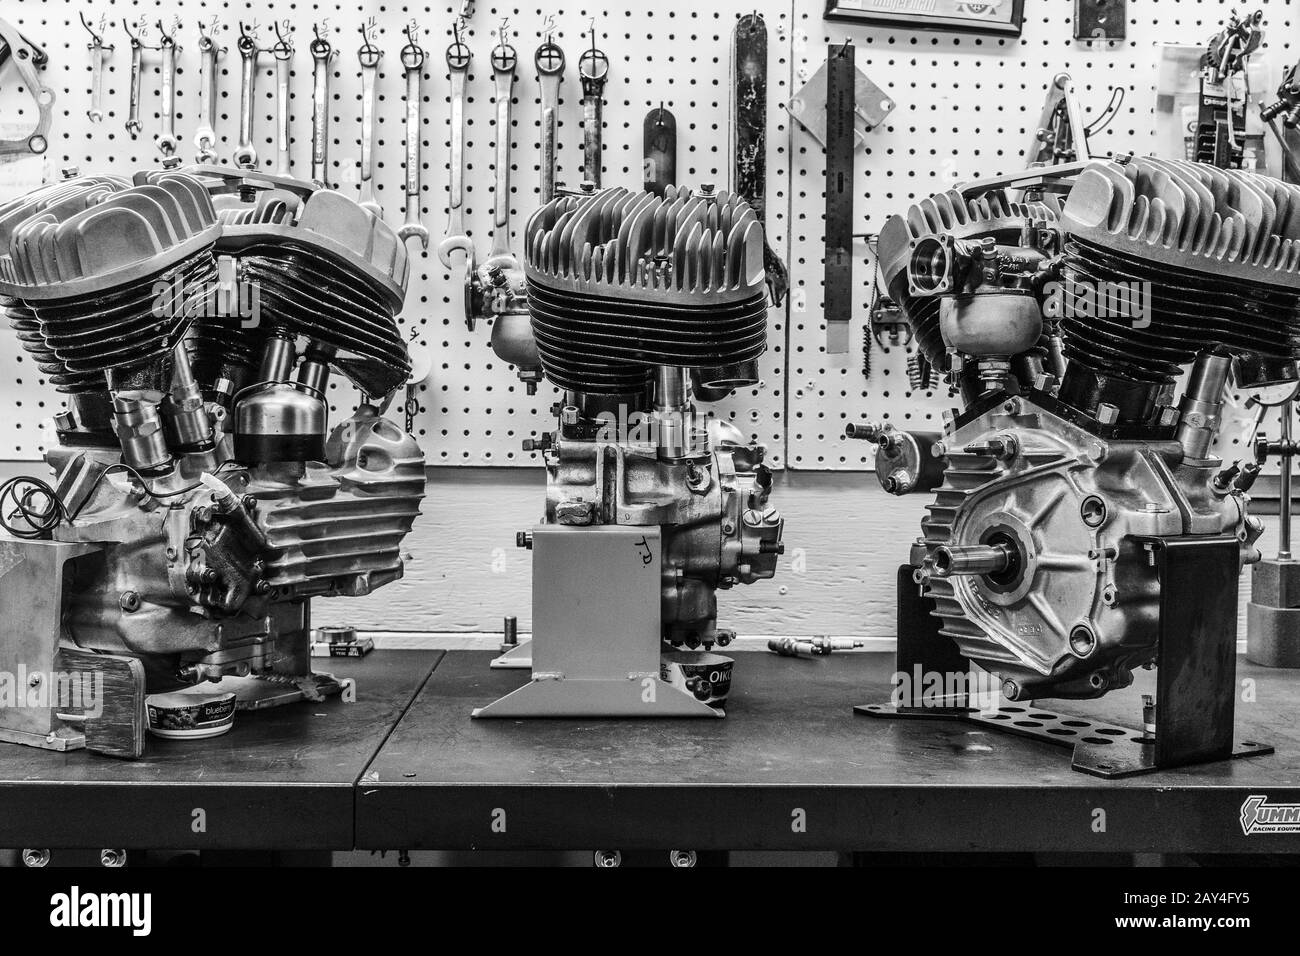 trois anciens moteurs harley davidson sont exposés dans un garage pour motos. Banque D'Images